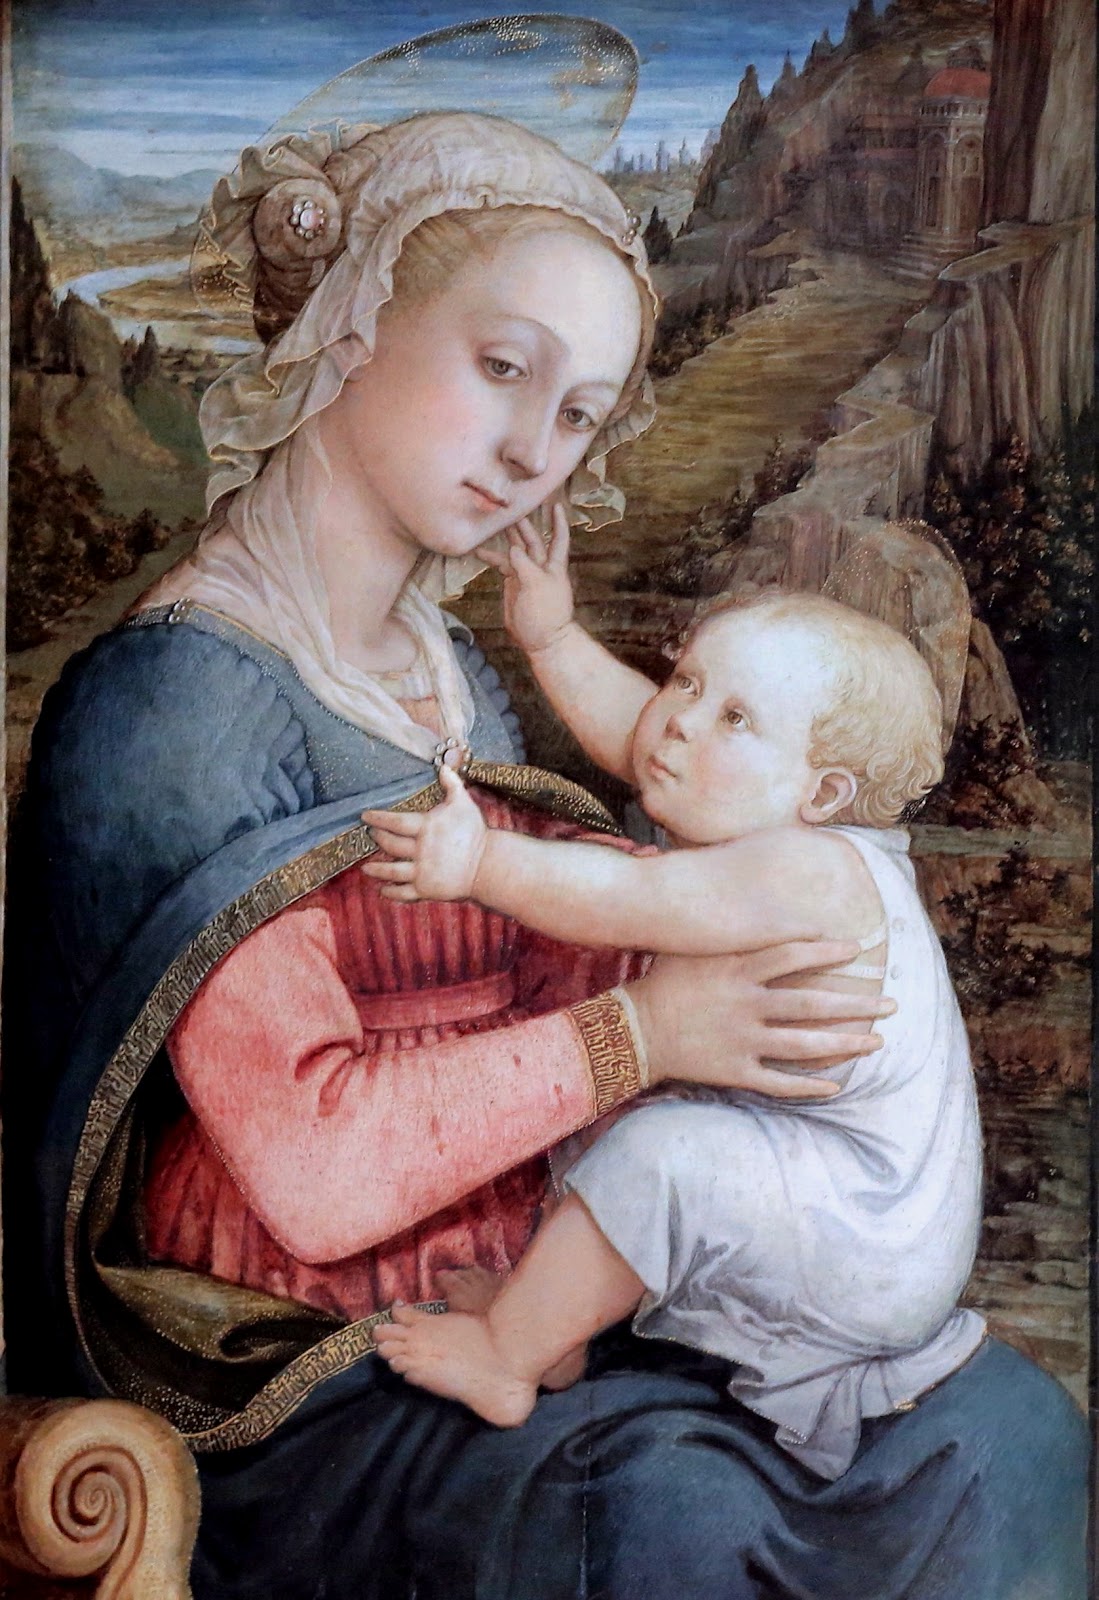 Filippino+Lippi-1457-1504 (146).jpg